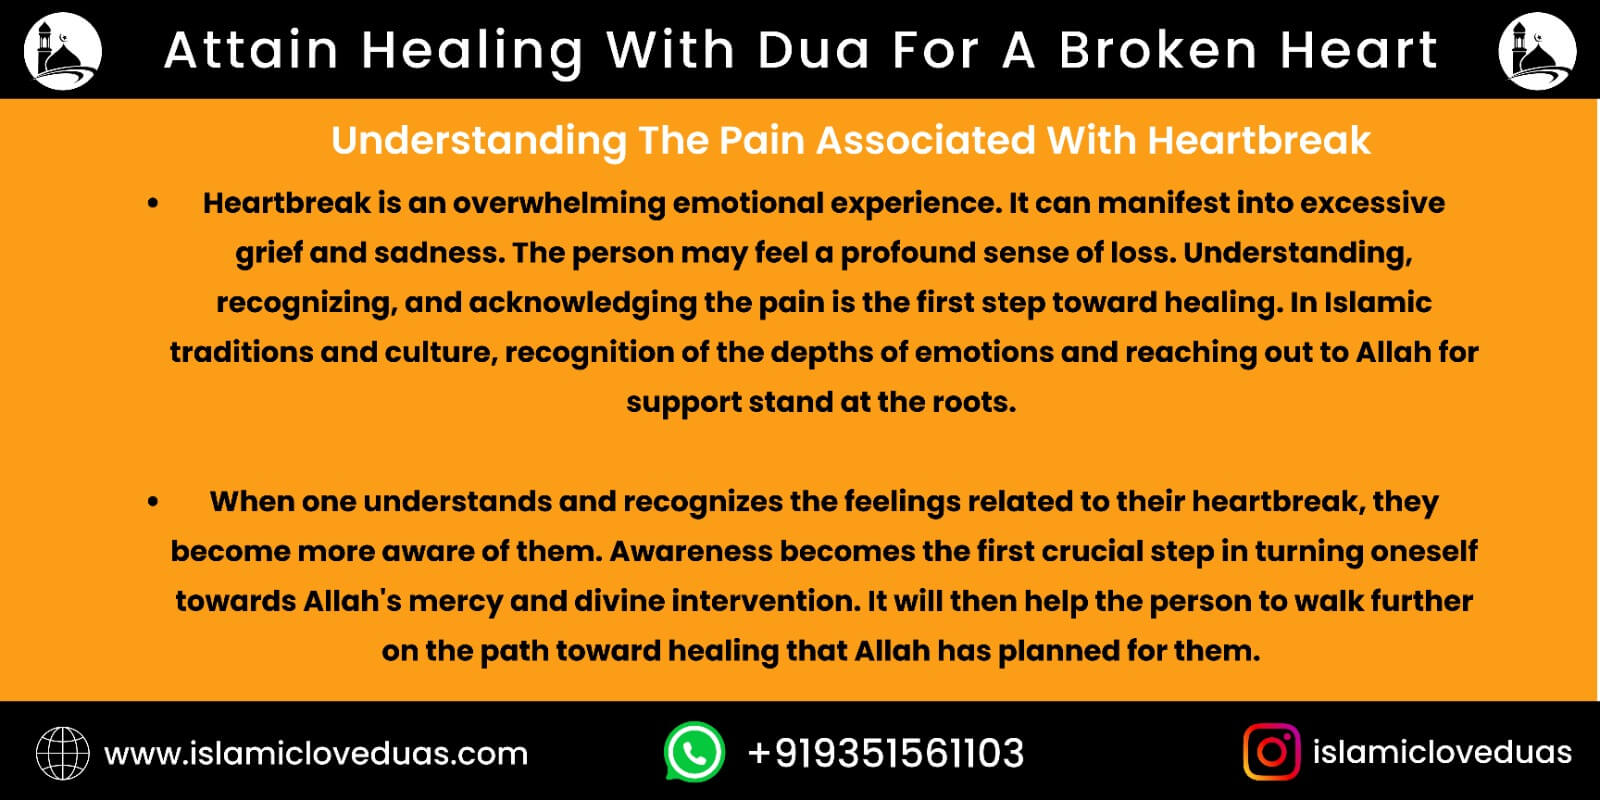 Attain Healing With Dua For A Broken Heart